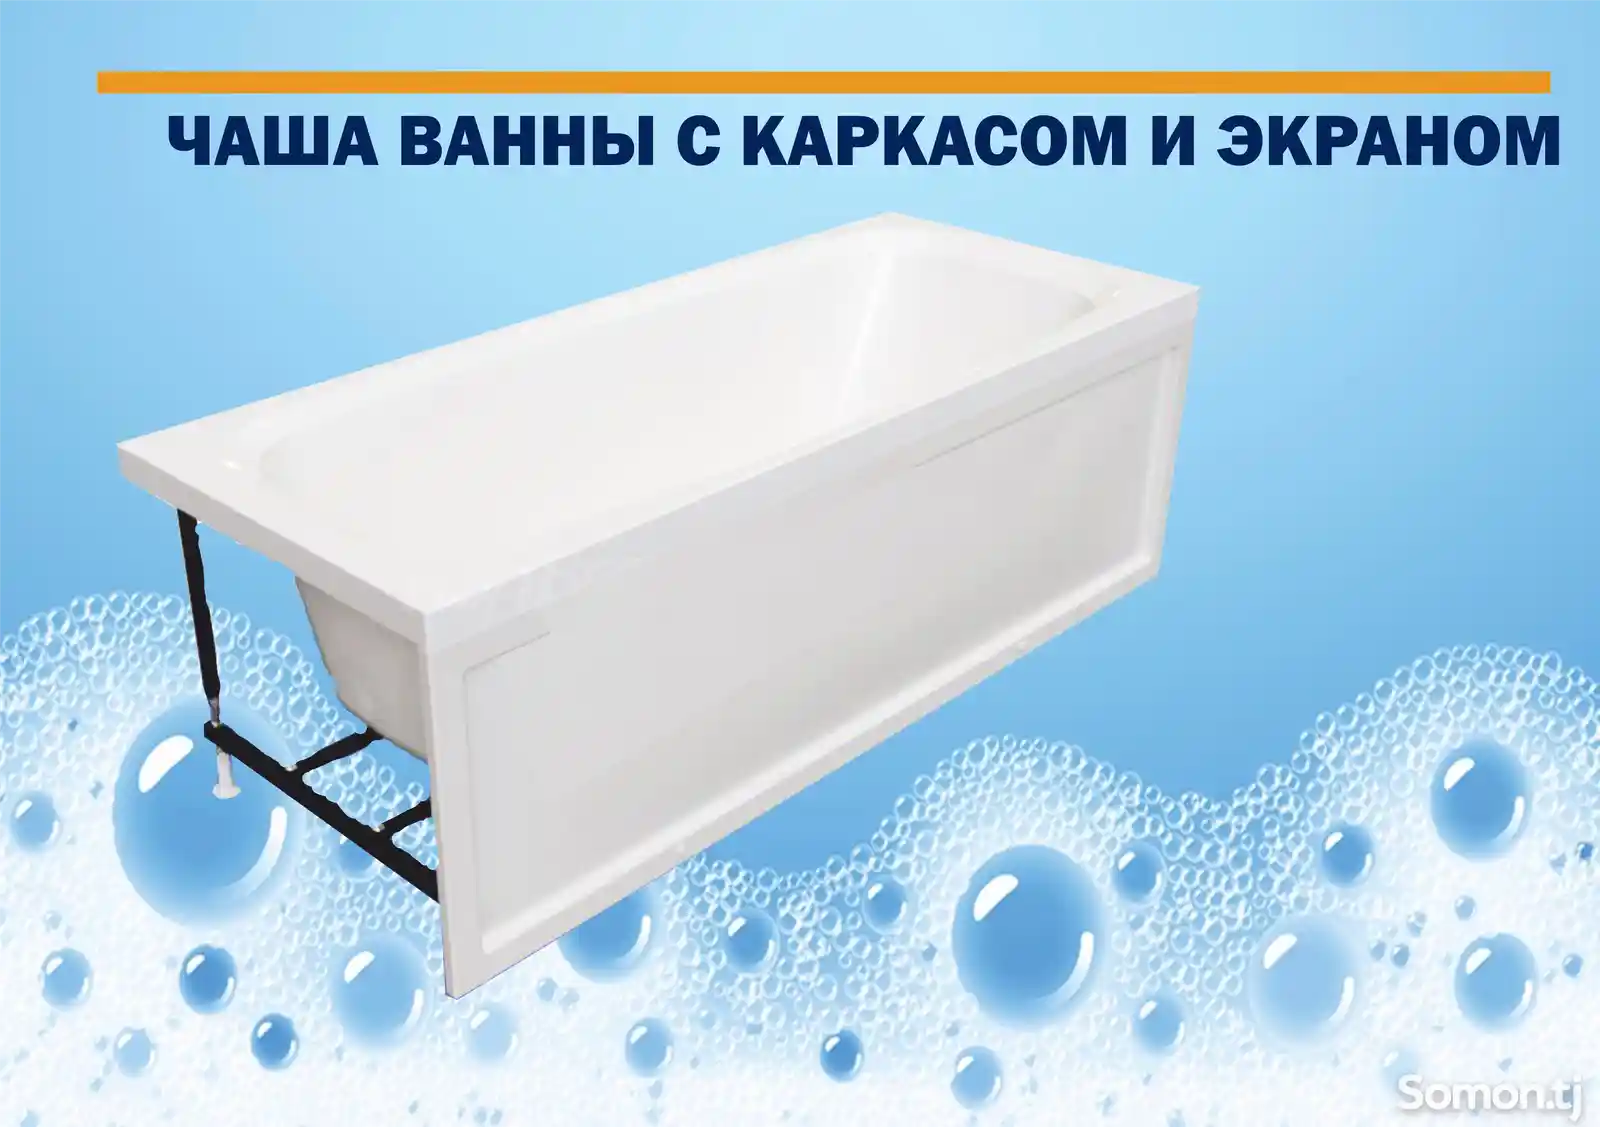 Антискользящая акриловая ванна Simple с каркасом и экраном-4